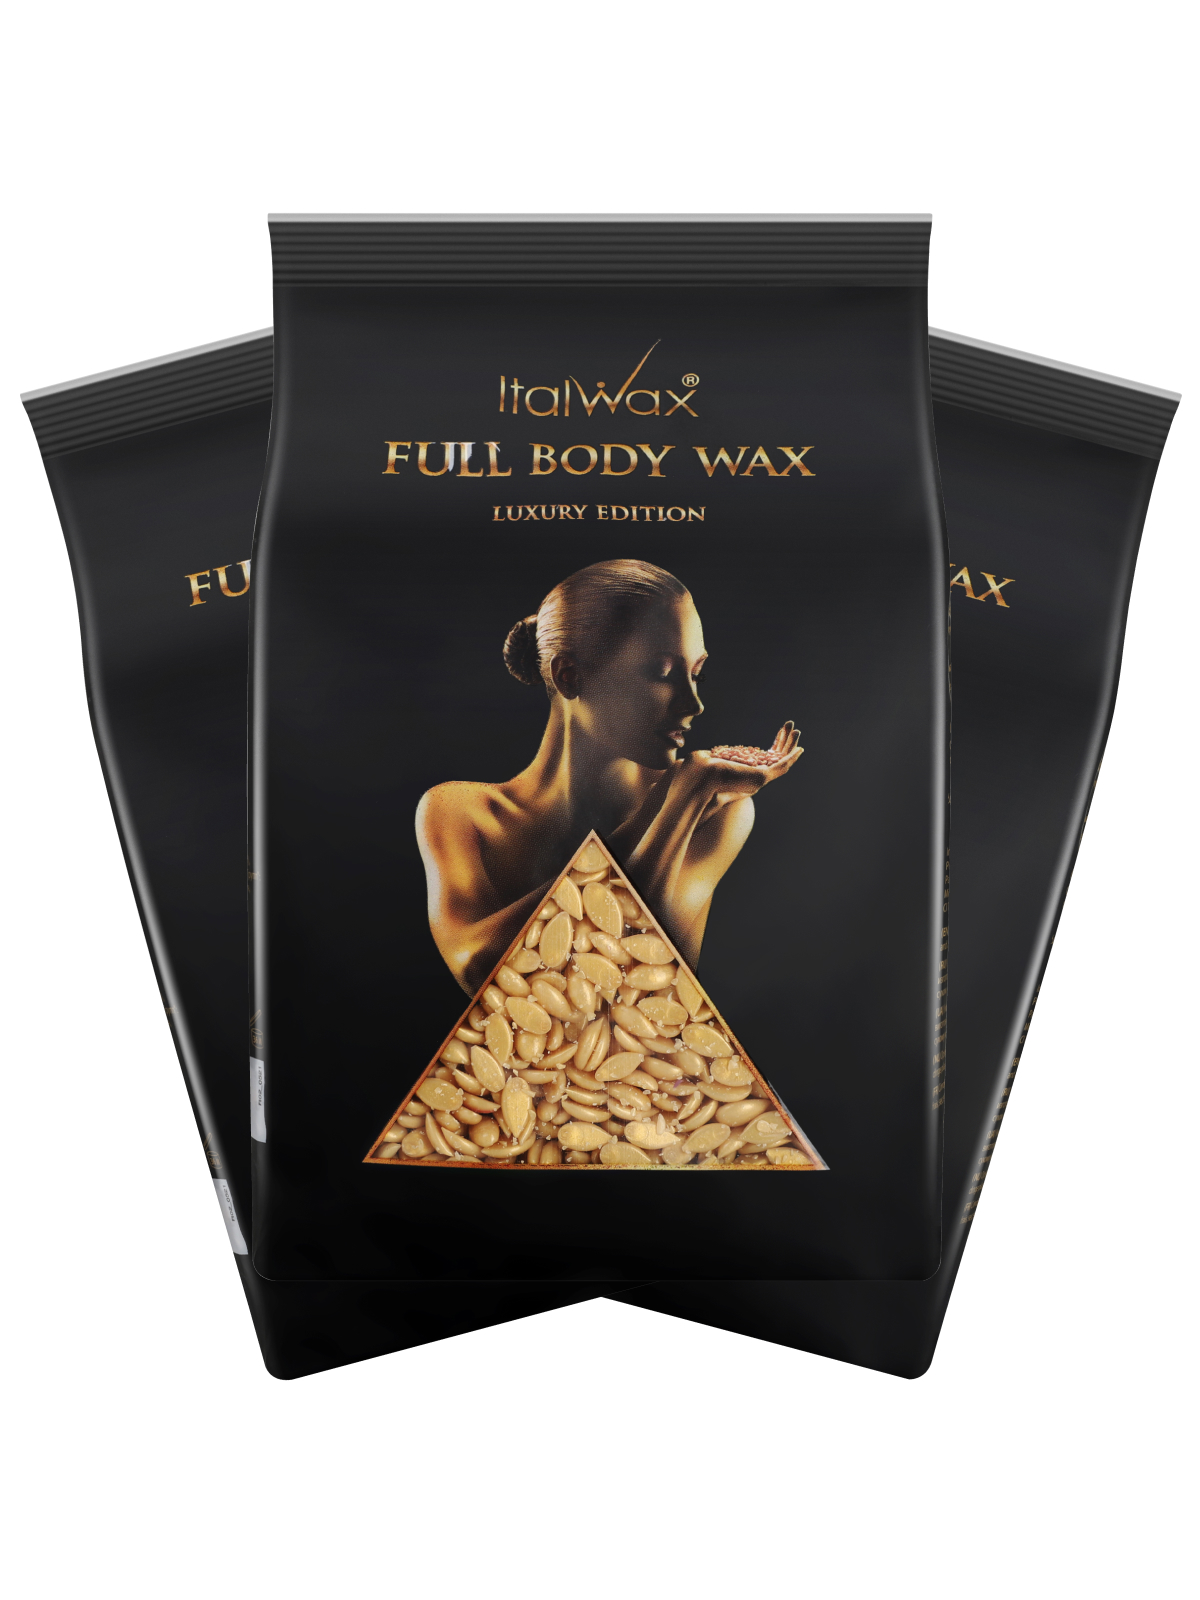 Воск для депиляции Italwax в гранулах Full Body Wax пленочный горячий набор 3 шт., 1 кг набор компаньоны аромата inspiration